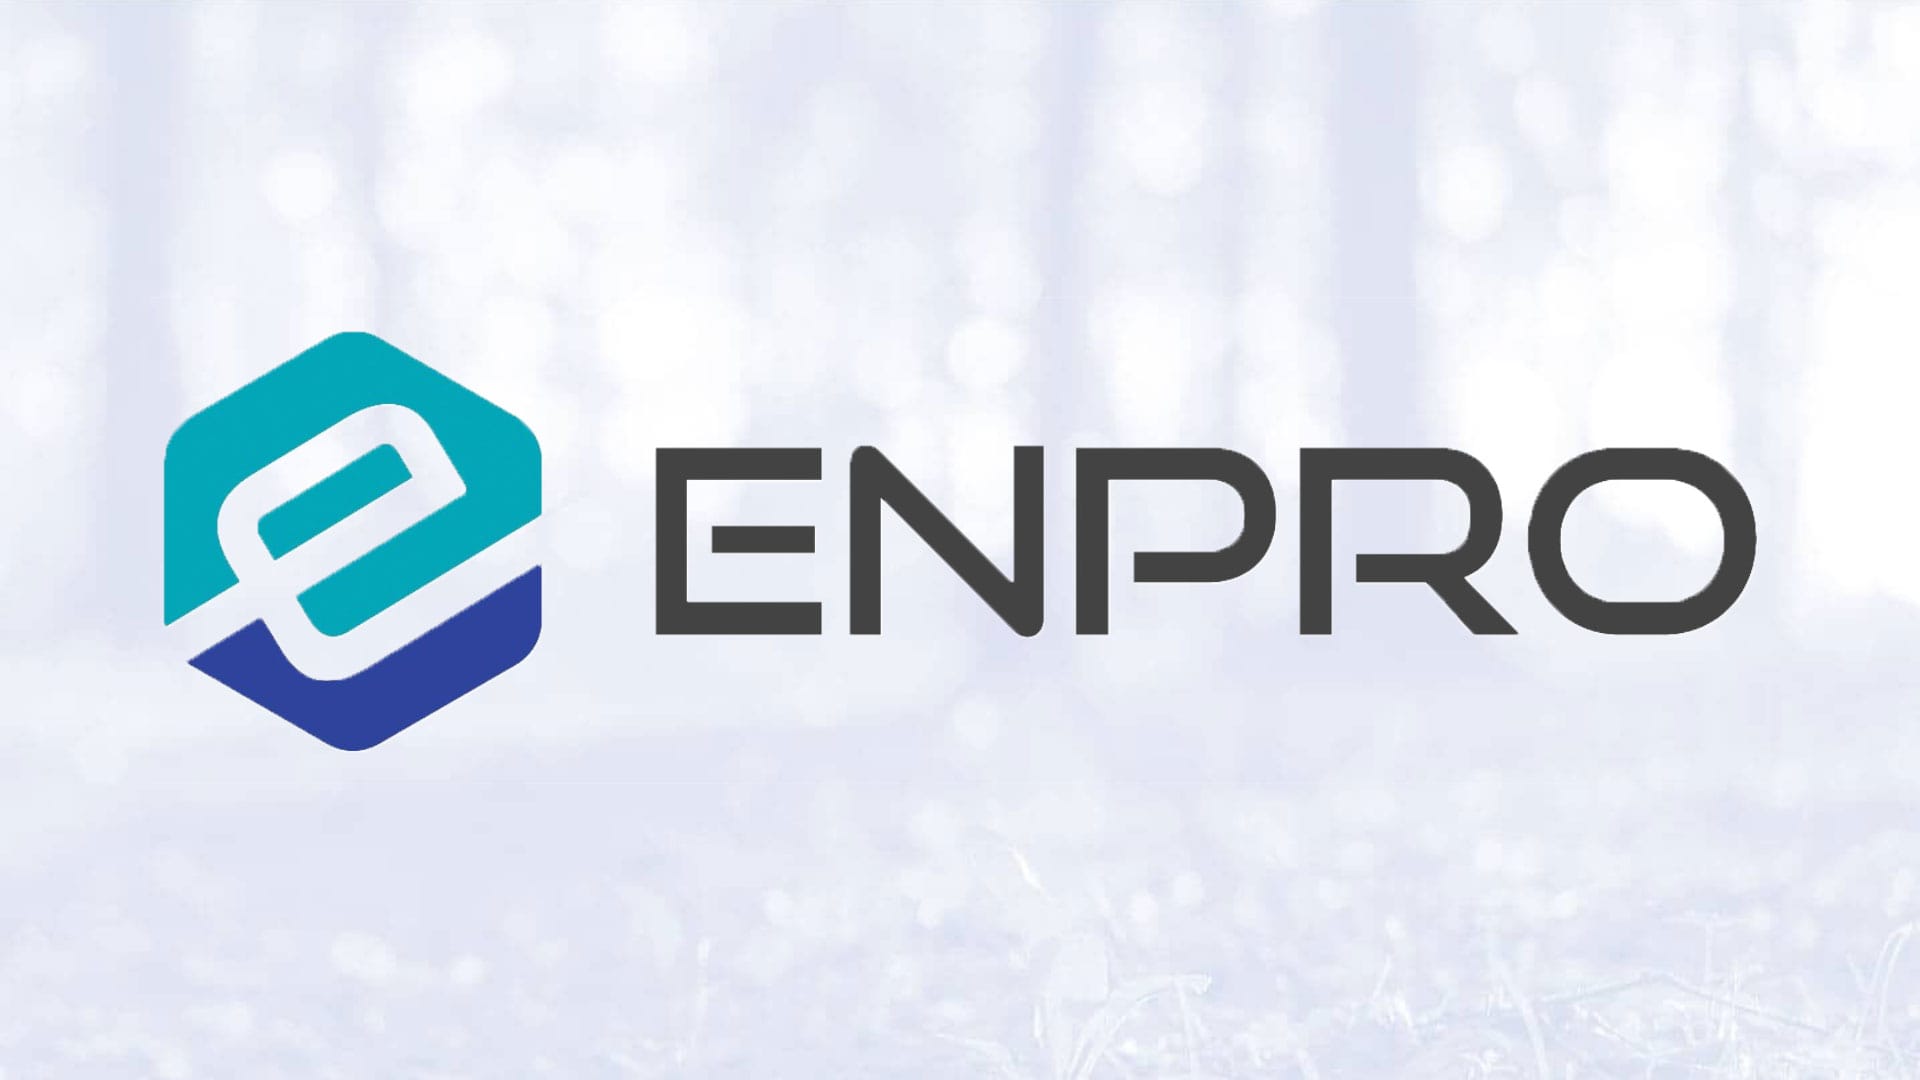 Enpro Inc